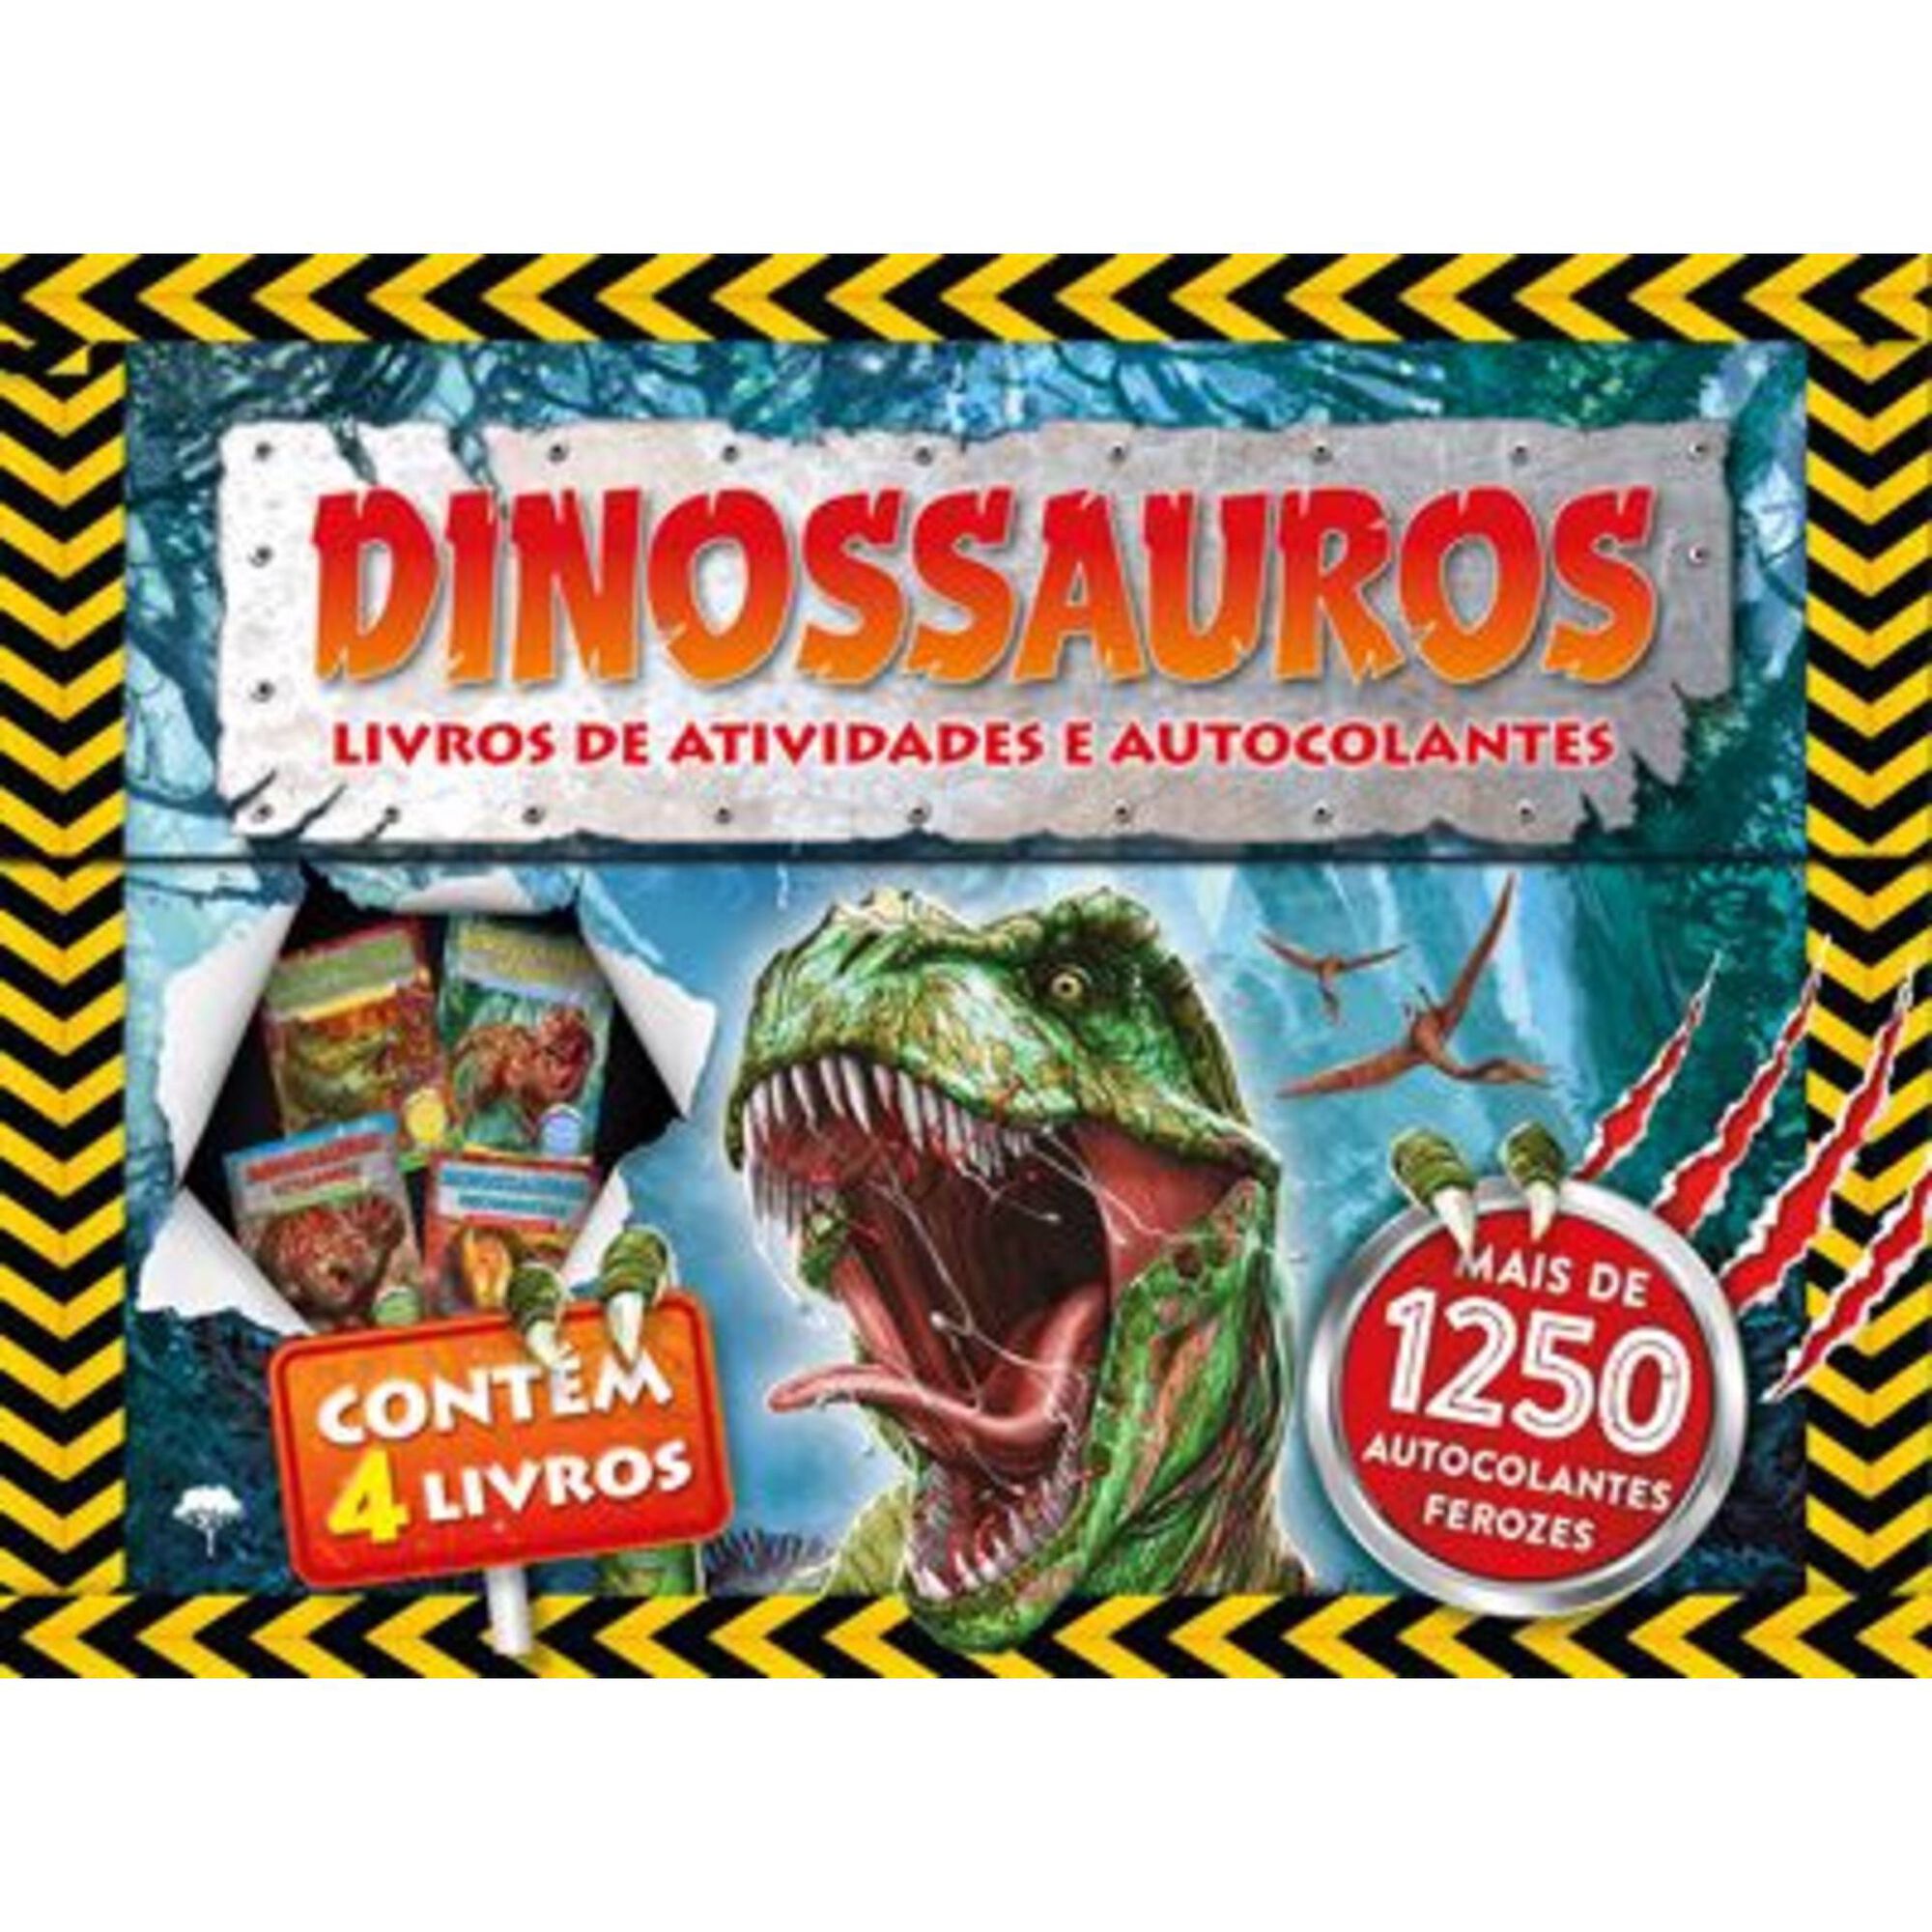 Dinossauros - Livros de Atividades e Autocolantes